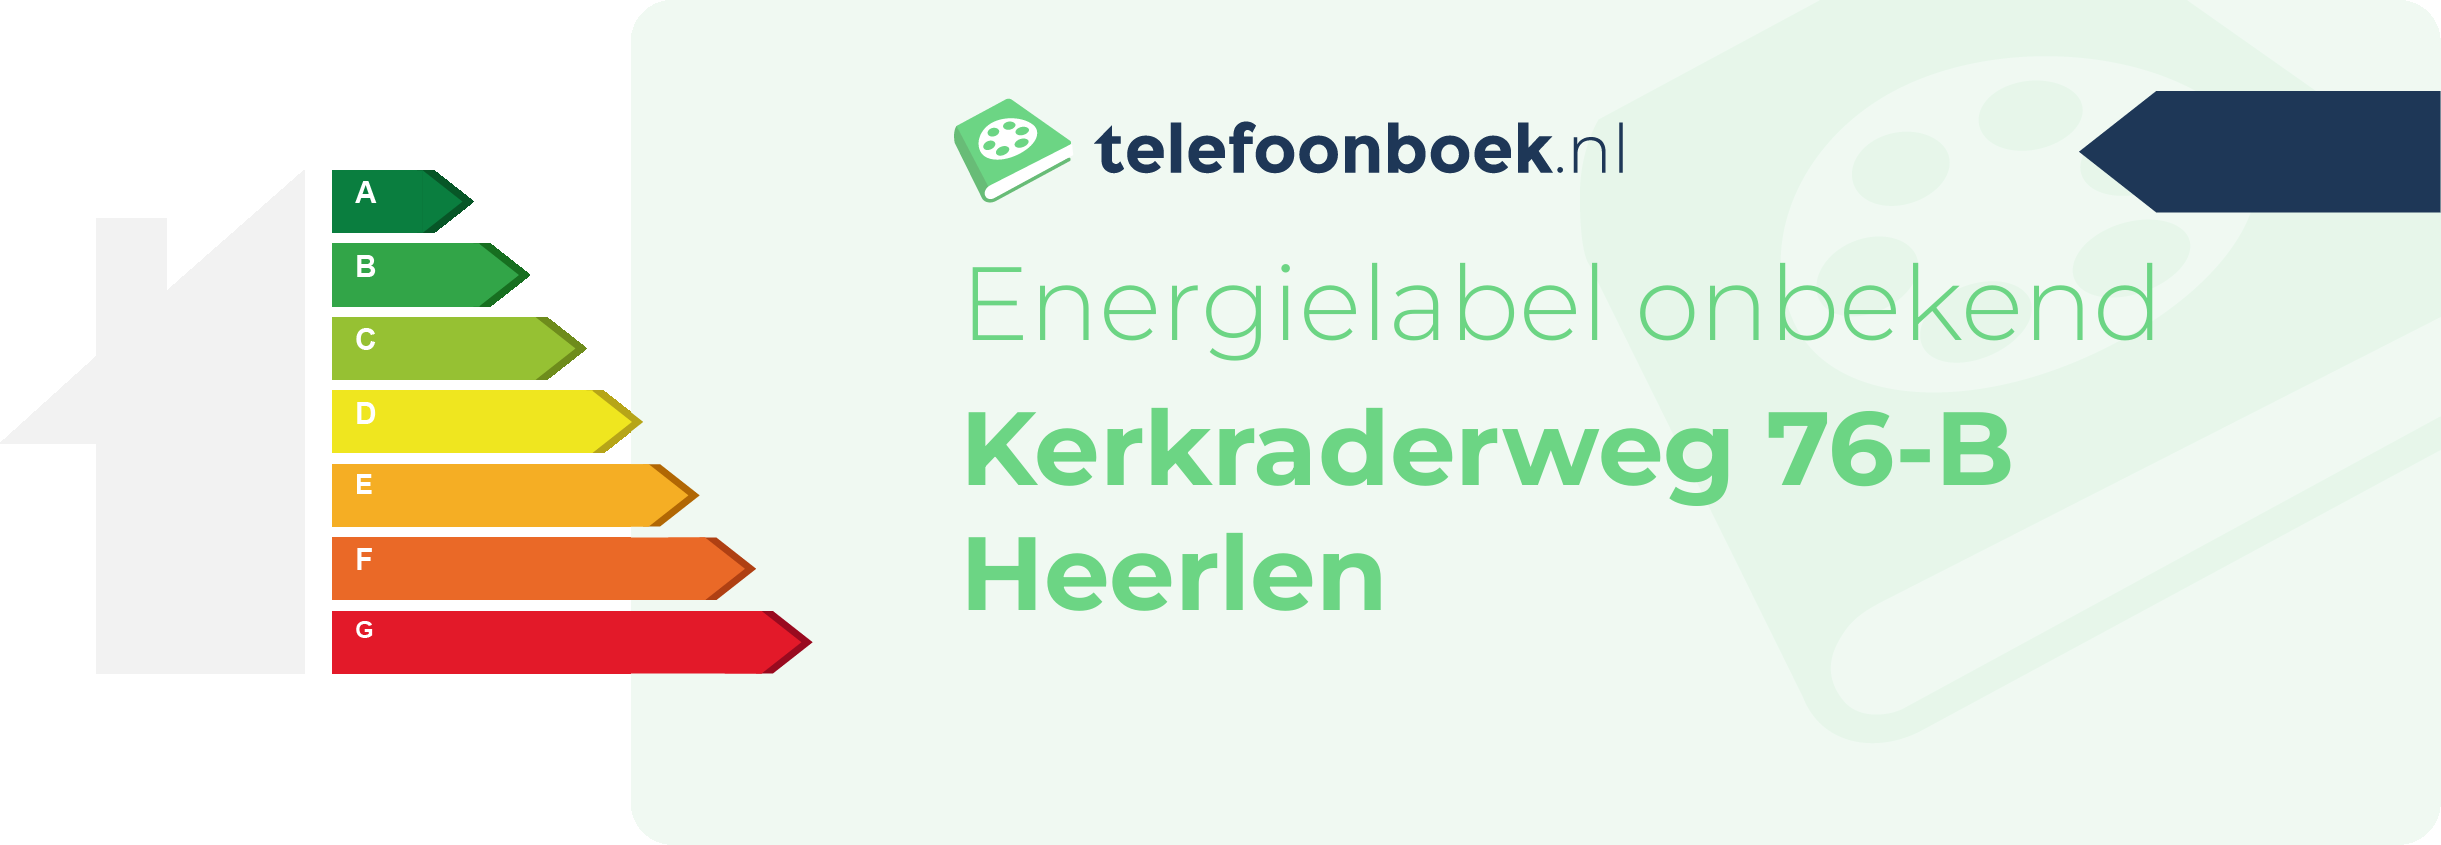 Energielabel Kerkraderweg 76-B Heerlen